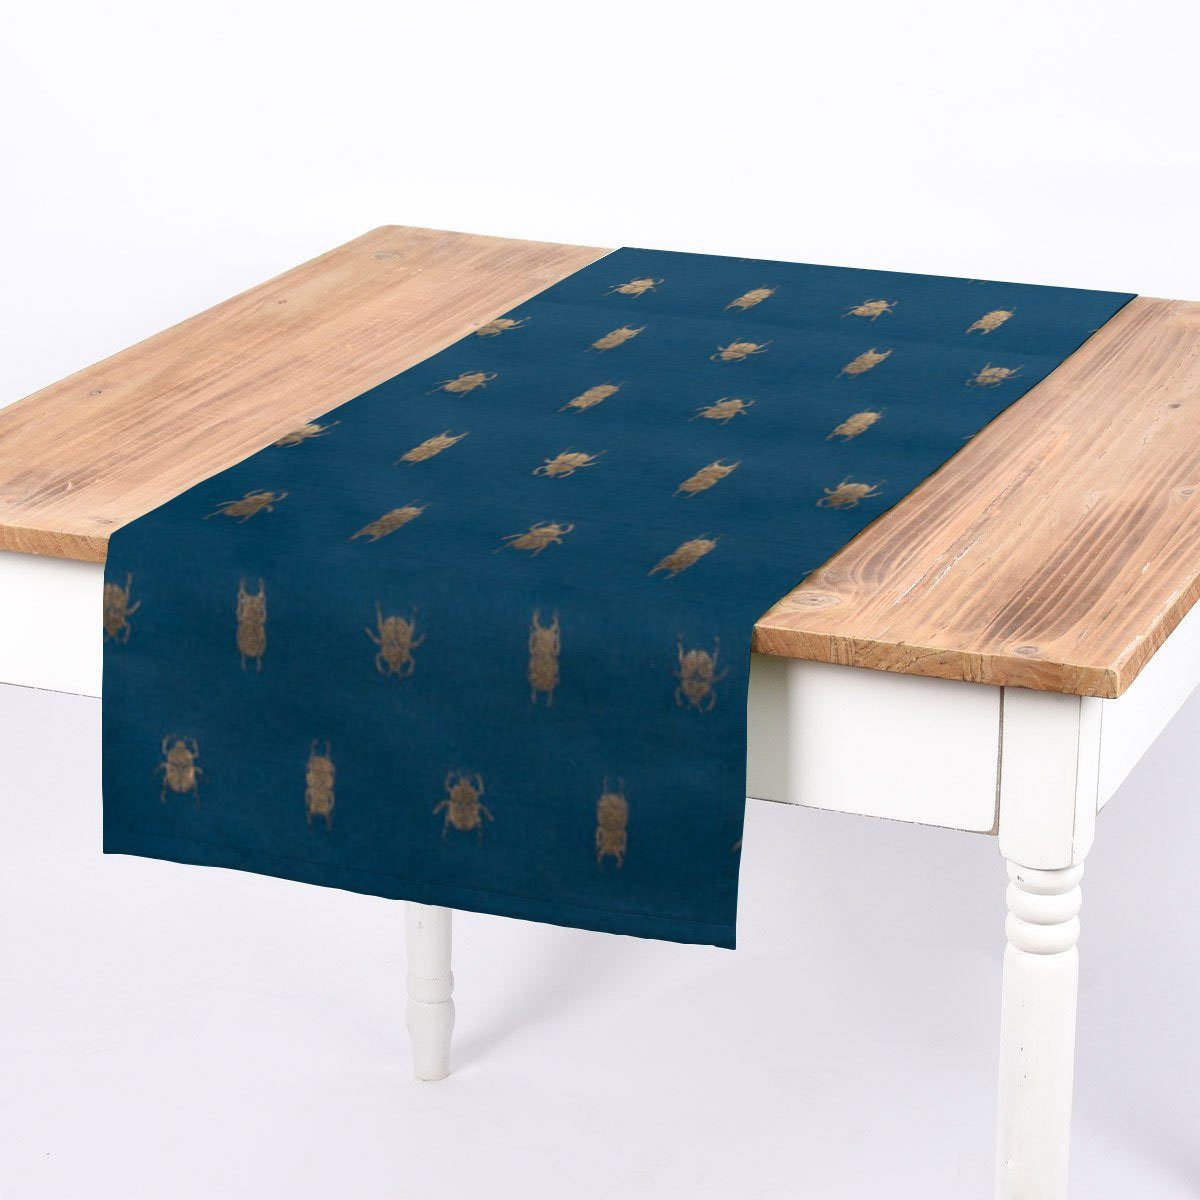 SCHÖNER LEBEN. Tischläufer SCHÖNER LEBEN. Tischläufer Käfer blau gold metallic 40x160cm, handmade